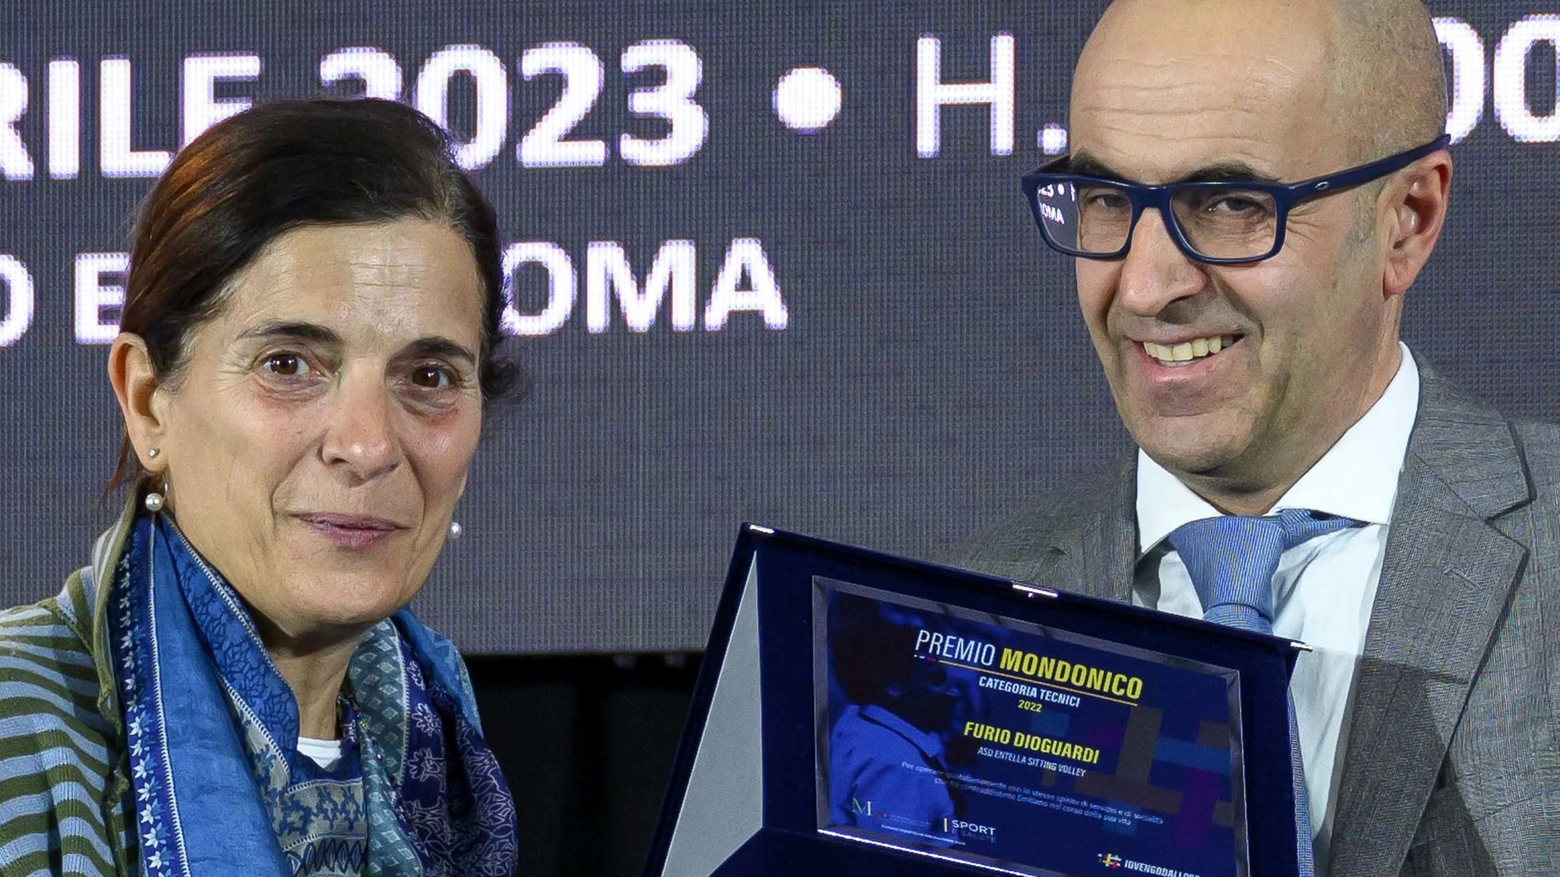 Il Premio Mondonico al dottor Dioguardi  Tecnico di sitting volley, promotore di sport